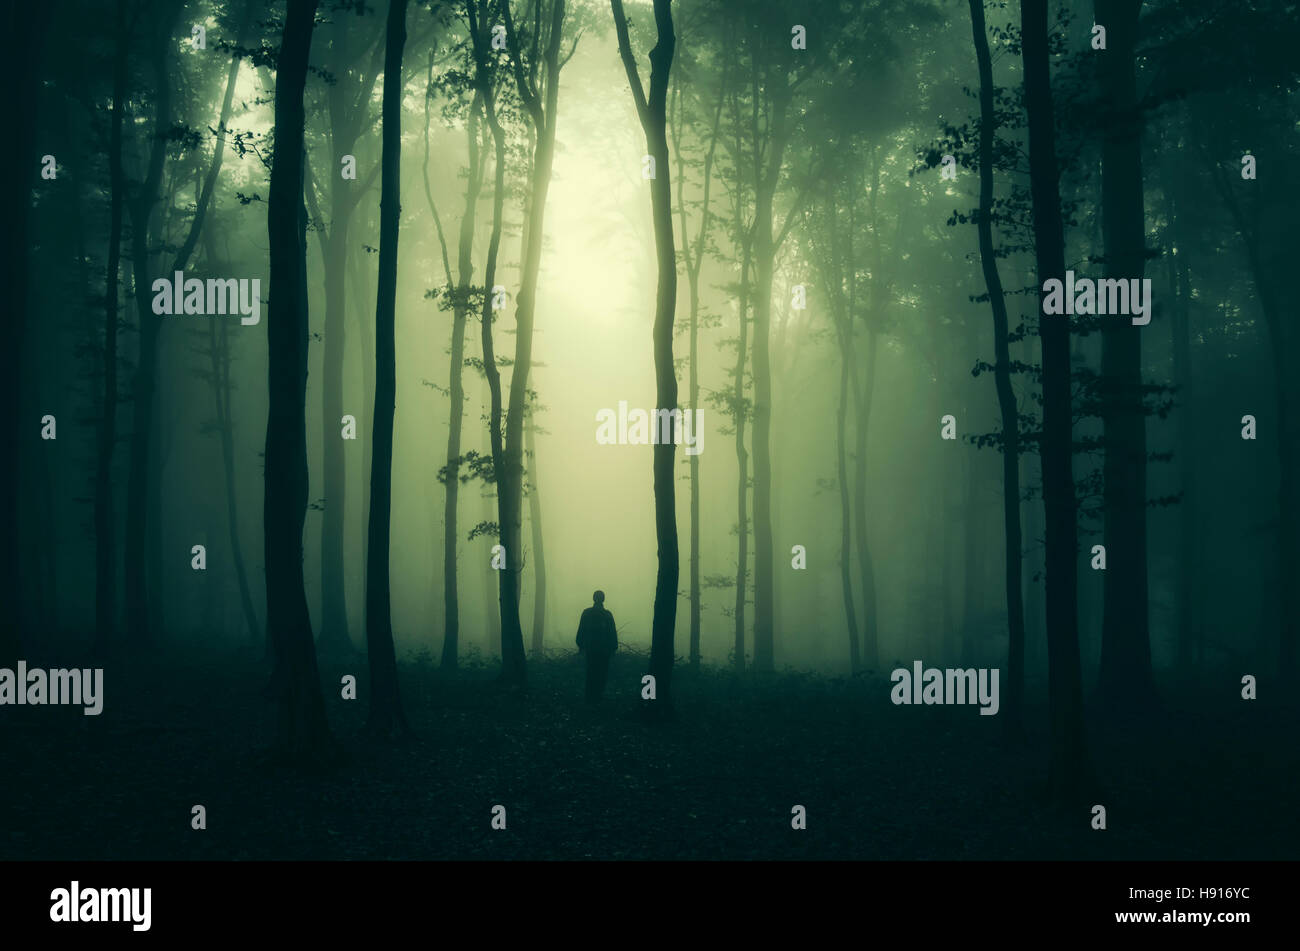 Paysage de forêt effrayante avec l'homme sur la voie sombre Banque D'Images